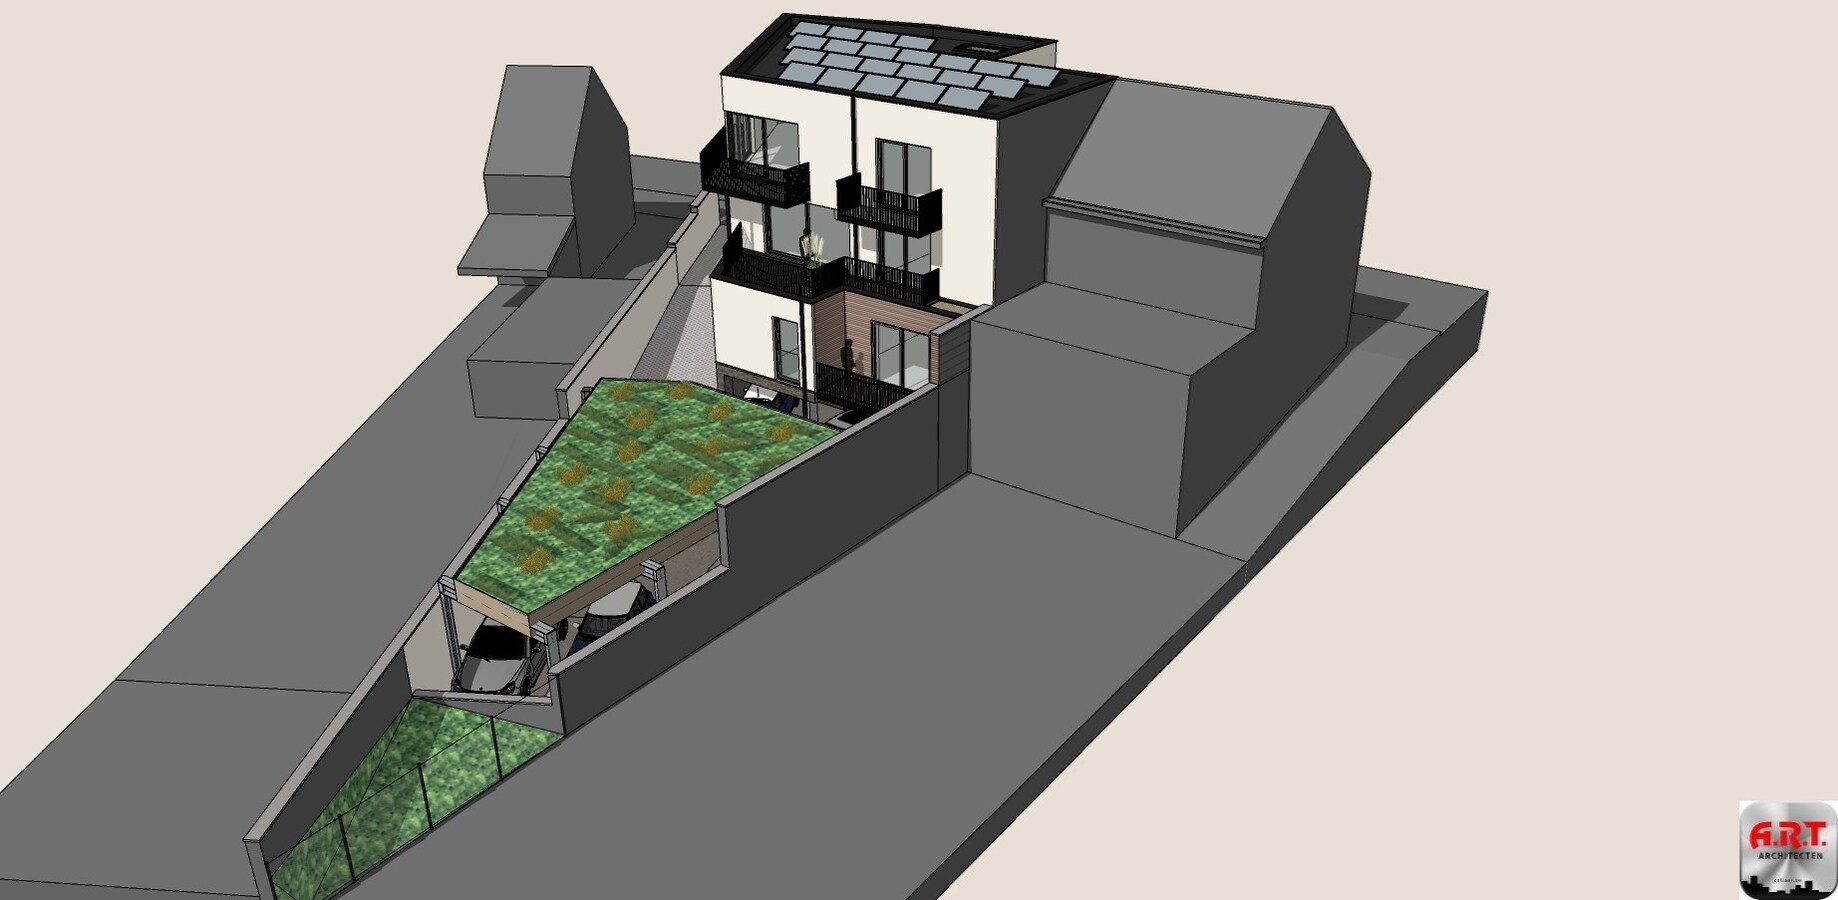 LINDEN appartement 3 slks + terrassen + berging + carport 